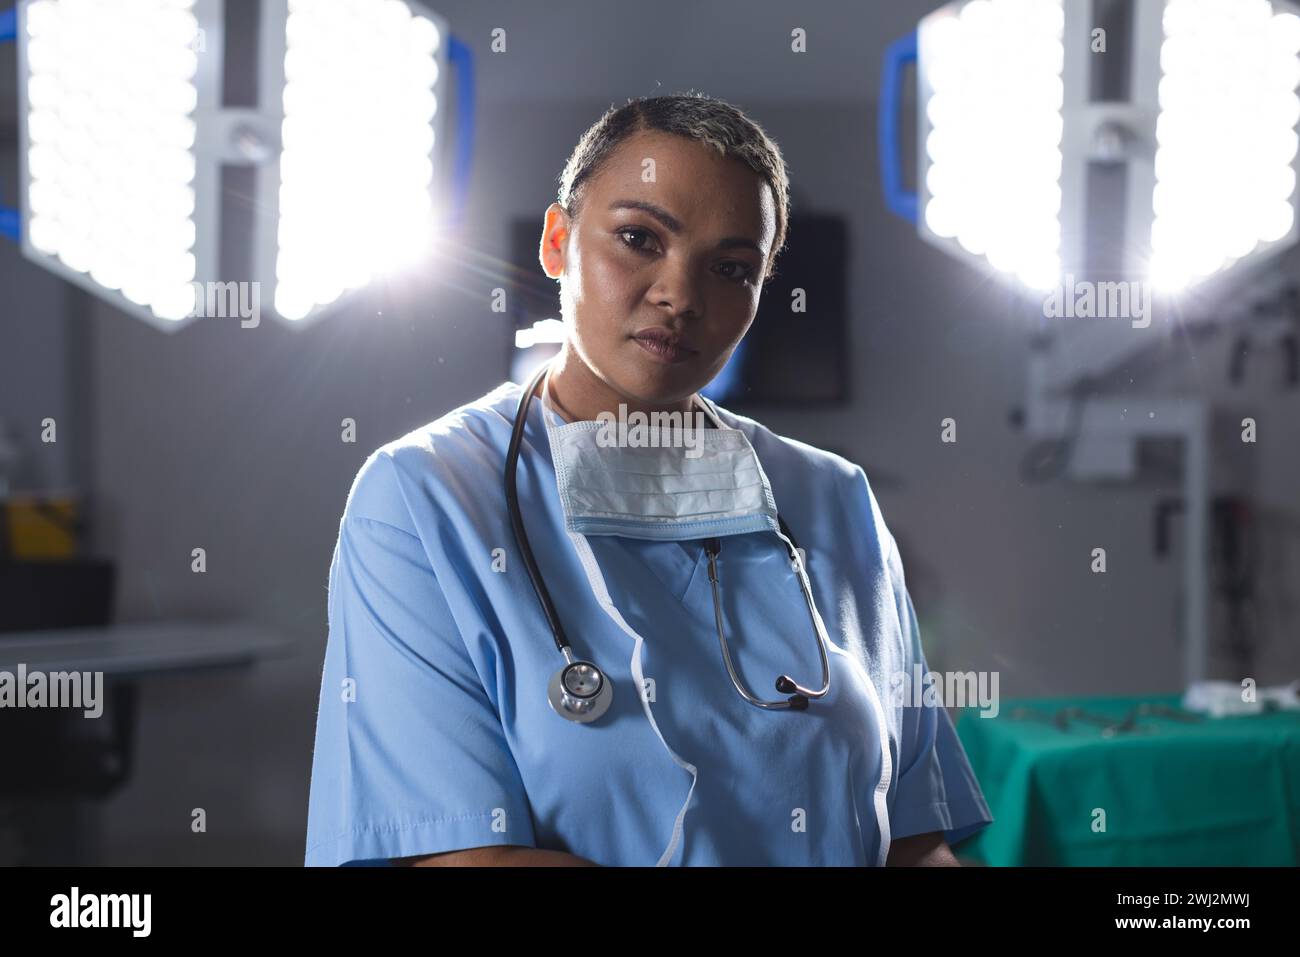 Retrato de cirujano femenino biracial usando exfoliantes y estetoscopio en quirófano Foto de stock